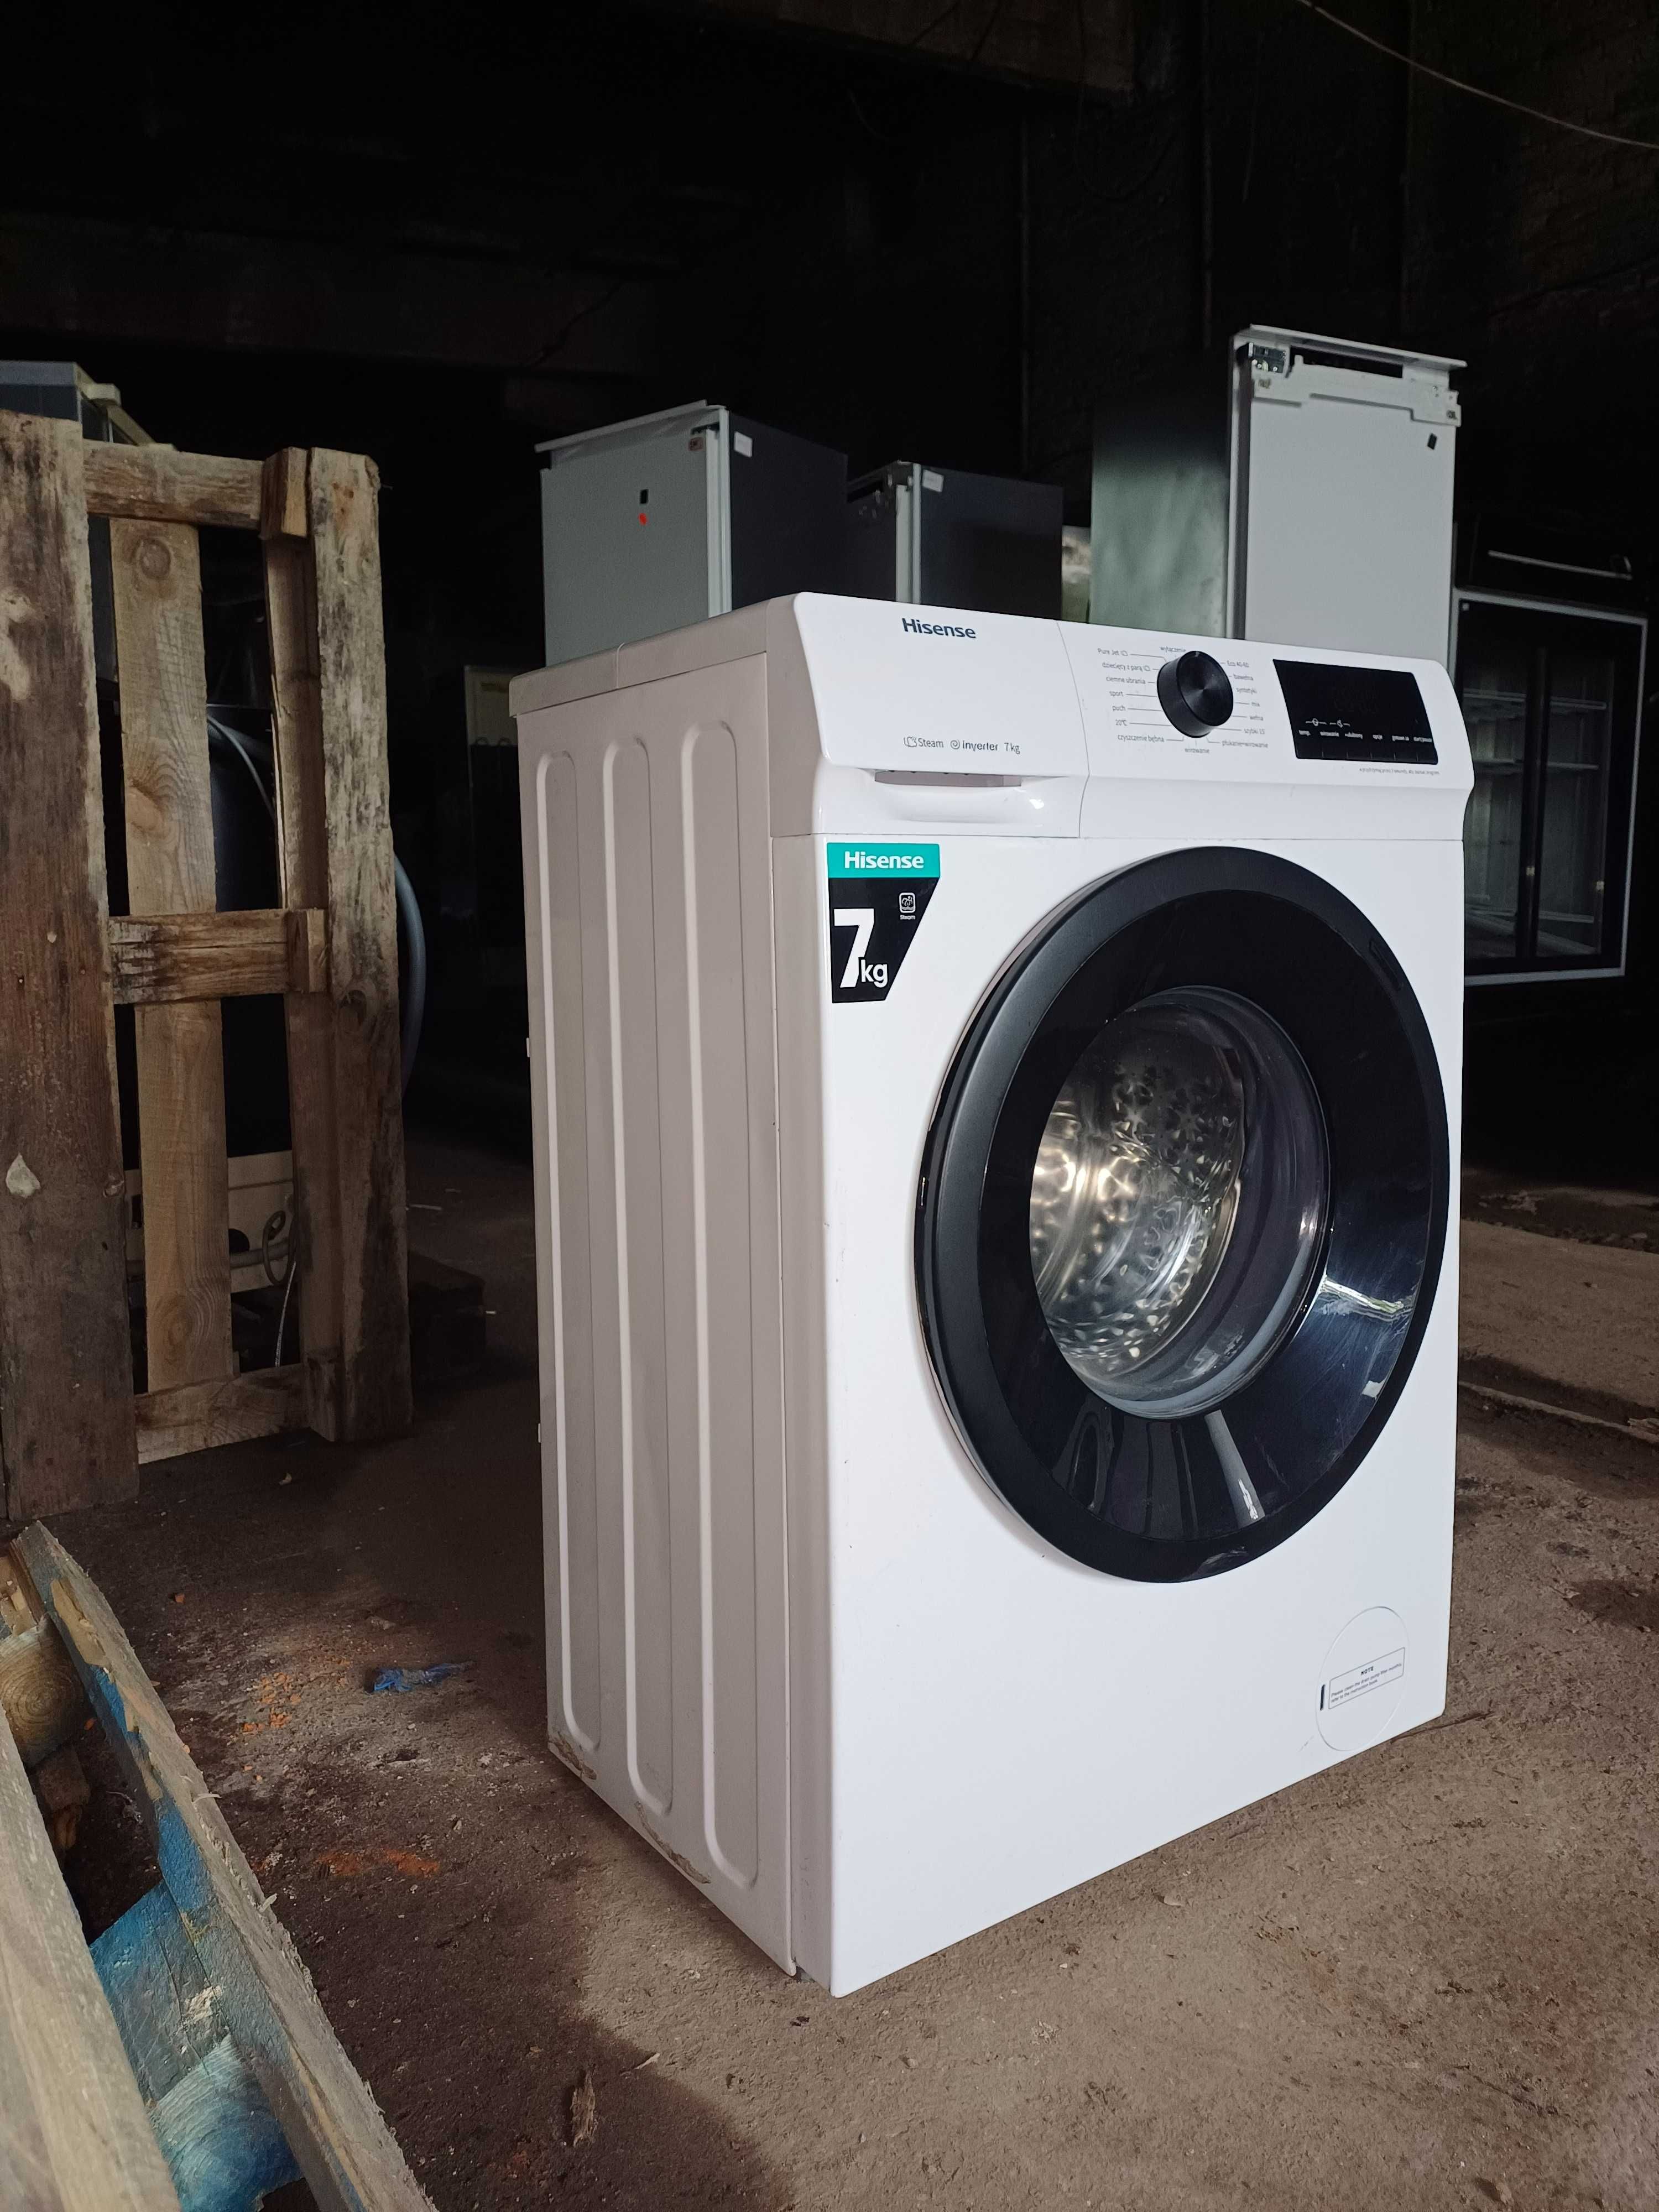 Вузька пральна машина Hisense WFQP7012EVM (7 кг) з Європи